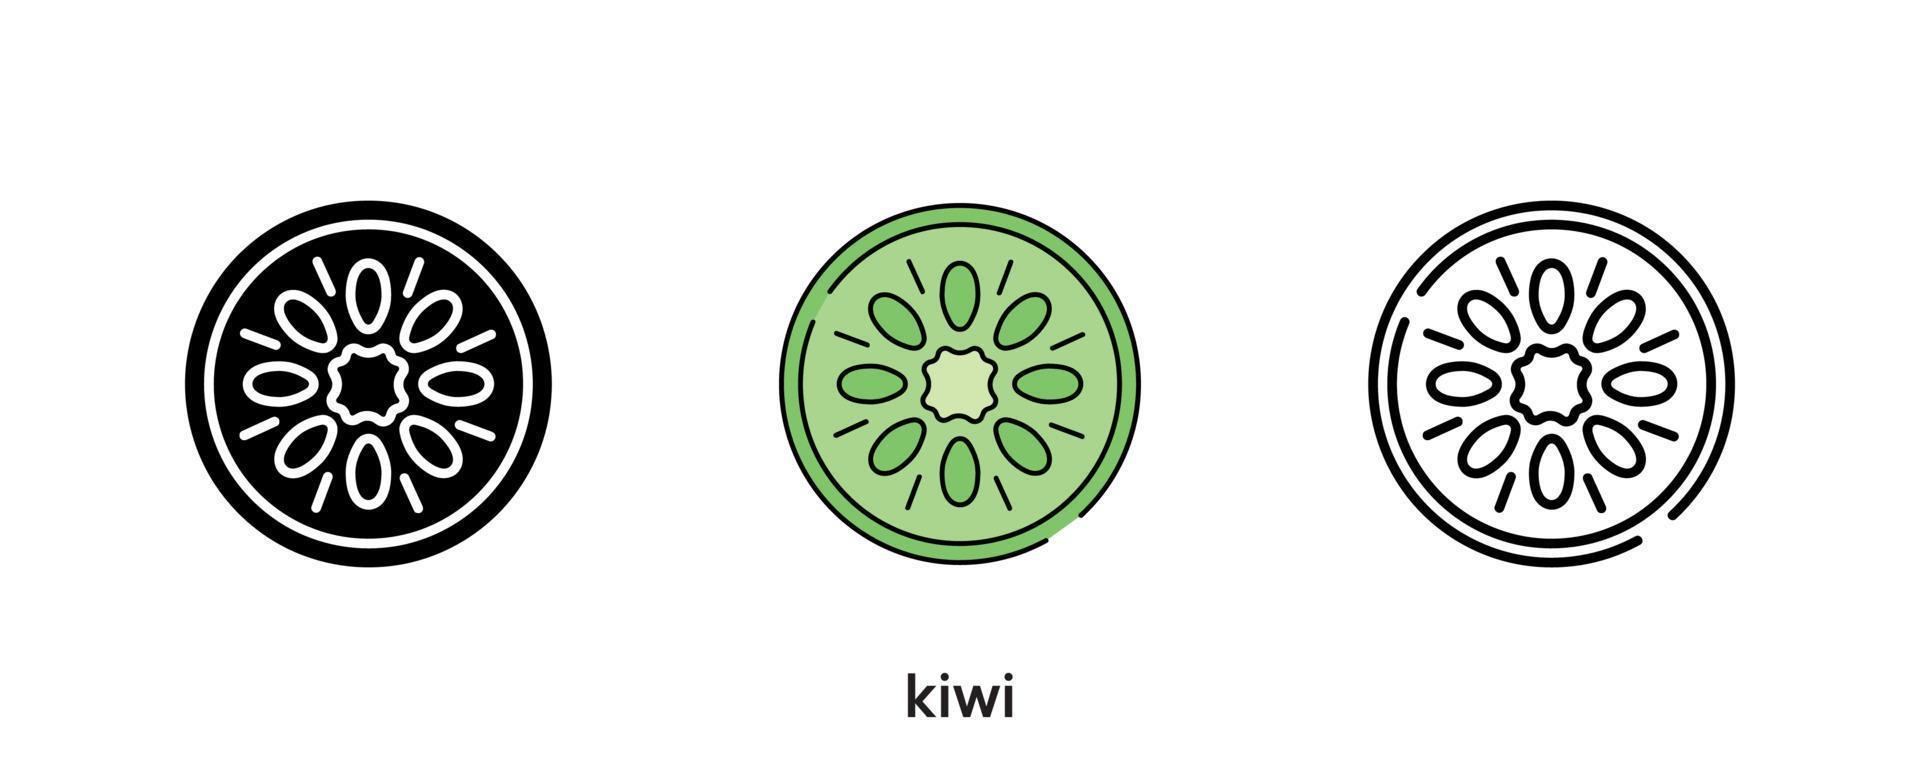 ontwerp van het kiwipictogram. kiwi pictogrammenset in silhouet, gekleurd en lineair. kiwi pictogram lijn vectorillustratie geïsoleerd op een schone achtergrond voor uw web mobiele applicatie logo ontwerp. moderne lijn. vector